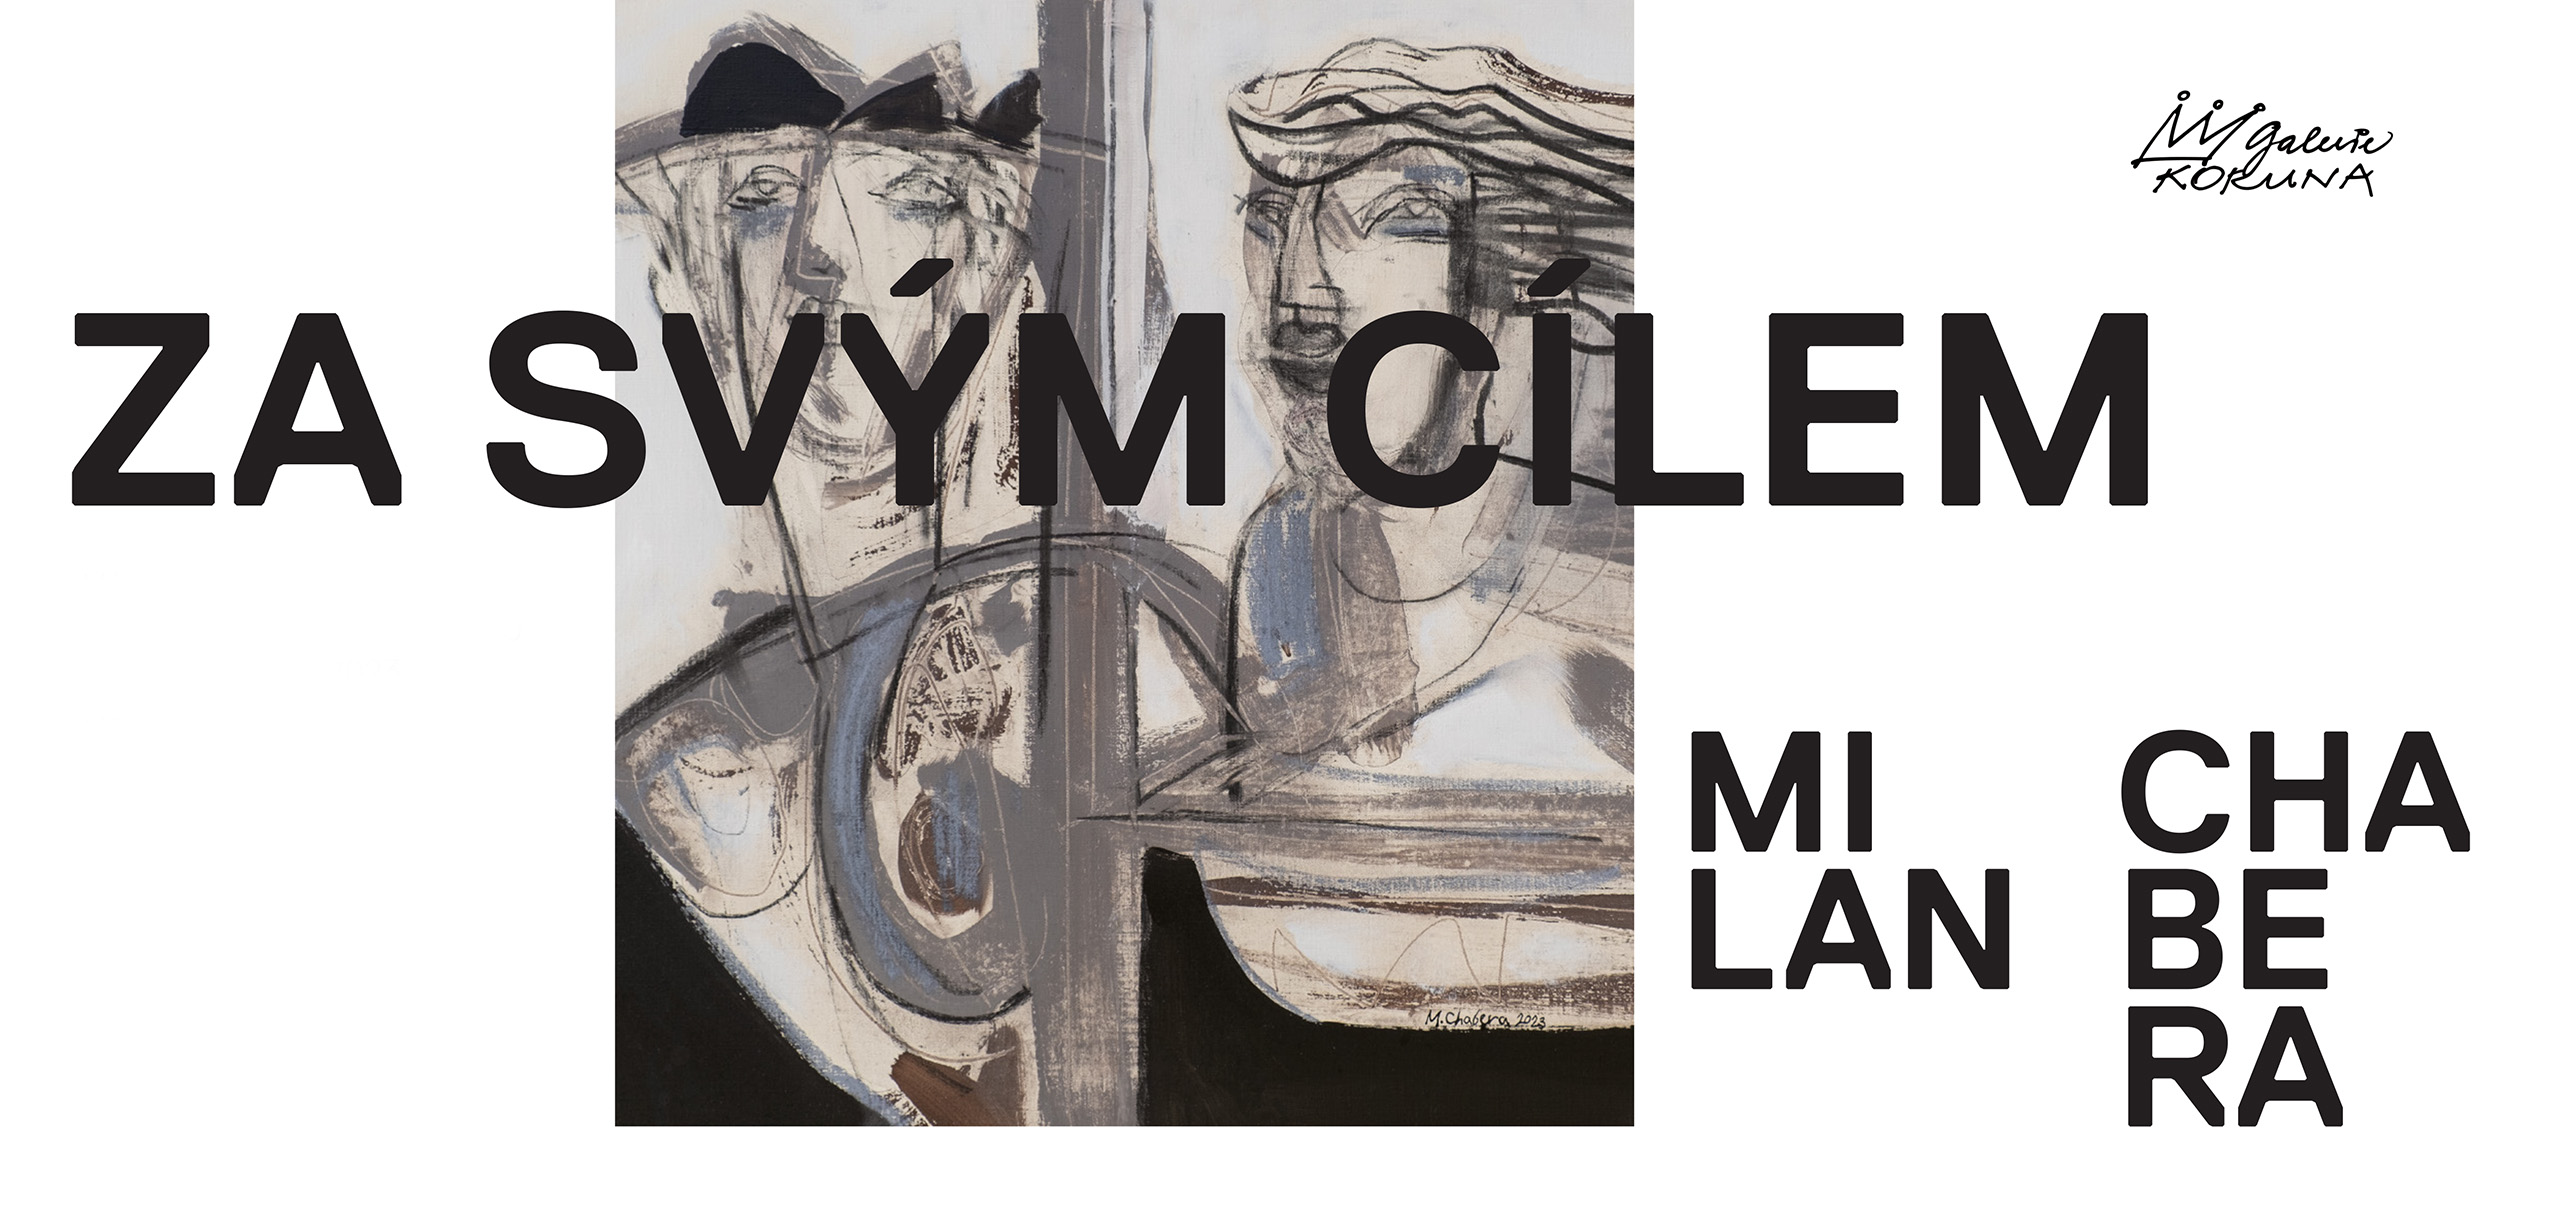 Milan-Chabera-Za-svym-cilem-galerie-Koruna-10-2023-pozvanka-invitation